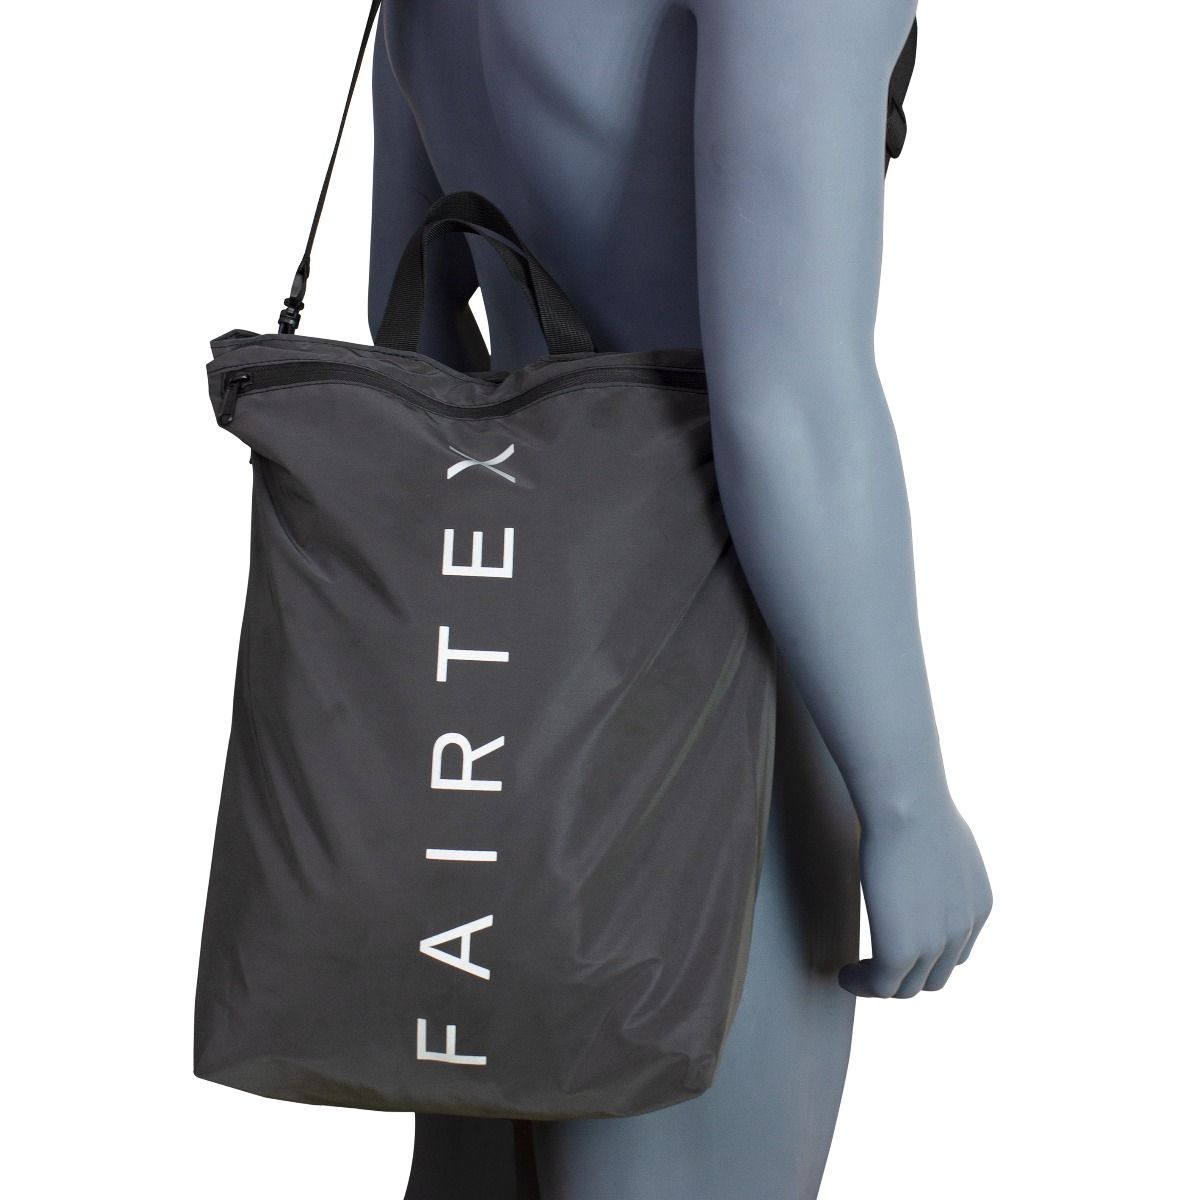 Fairtex Back Bag 12